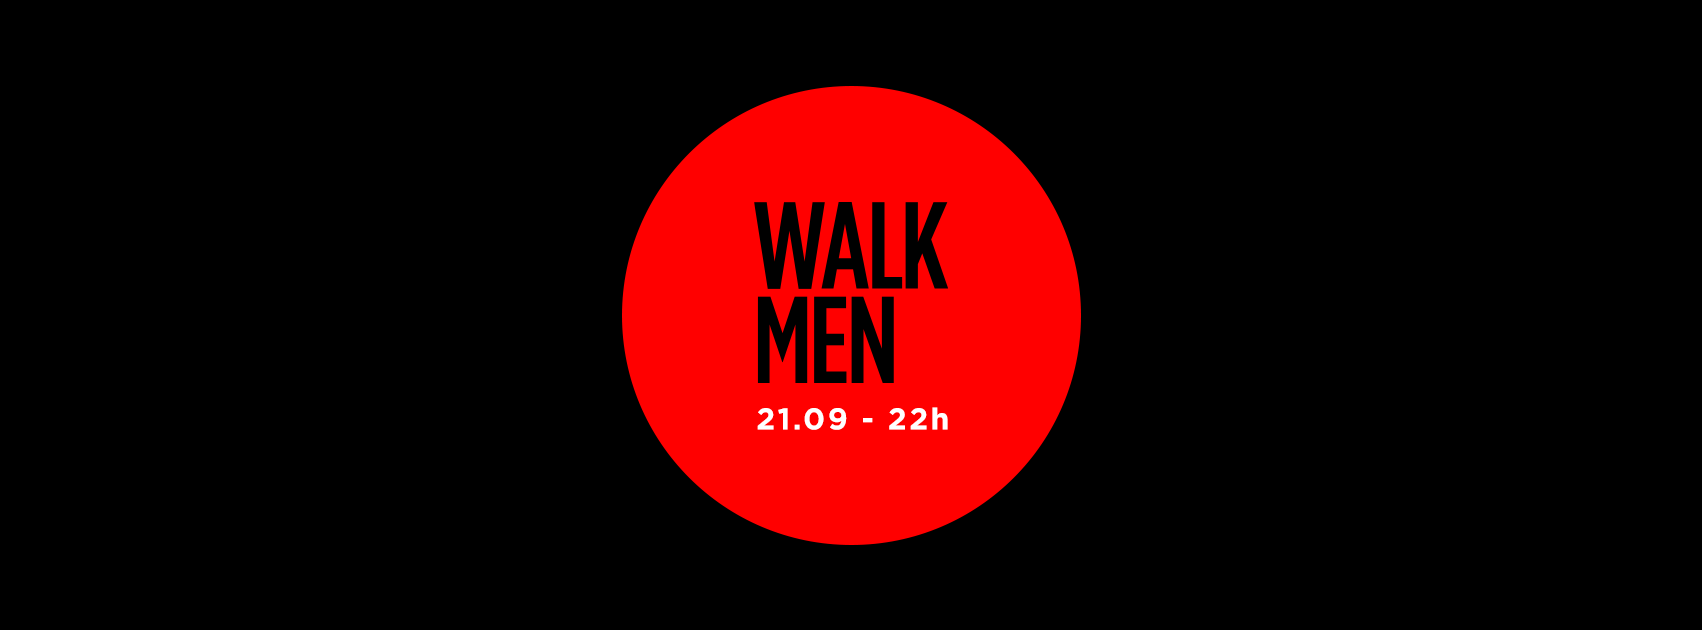 WalkMen-Capa-21-09-2019